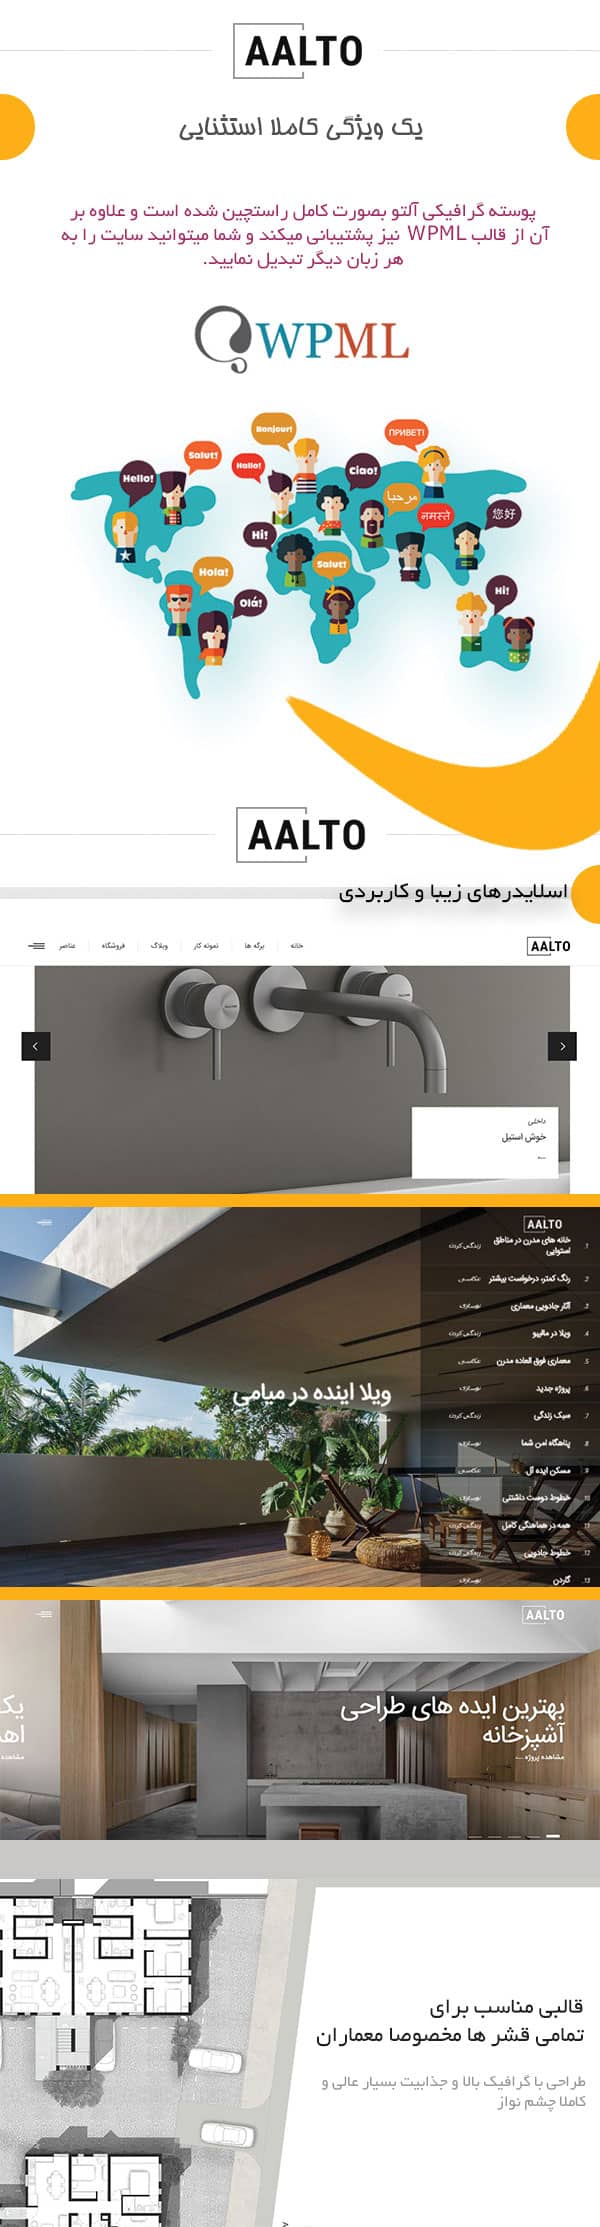 قالب ساخت و ساز وردپرس Aalto